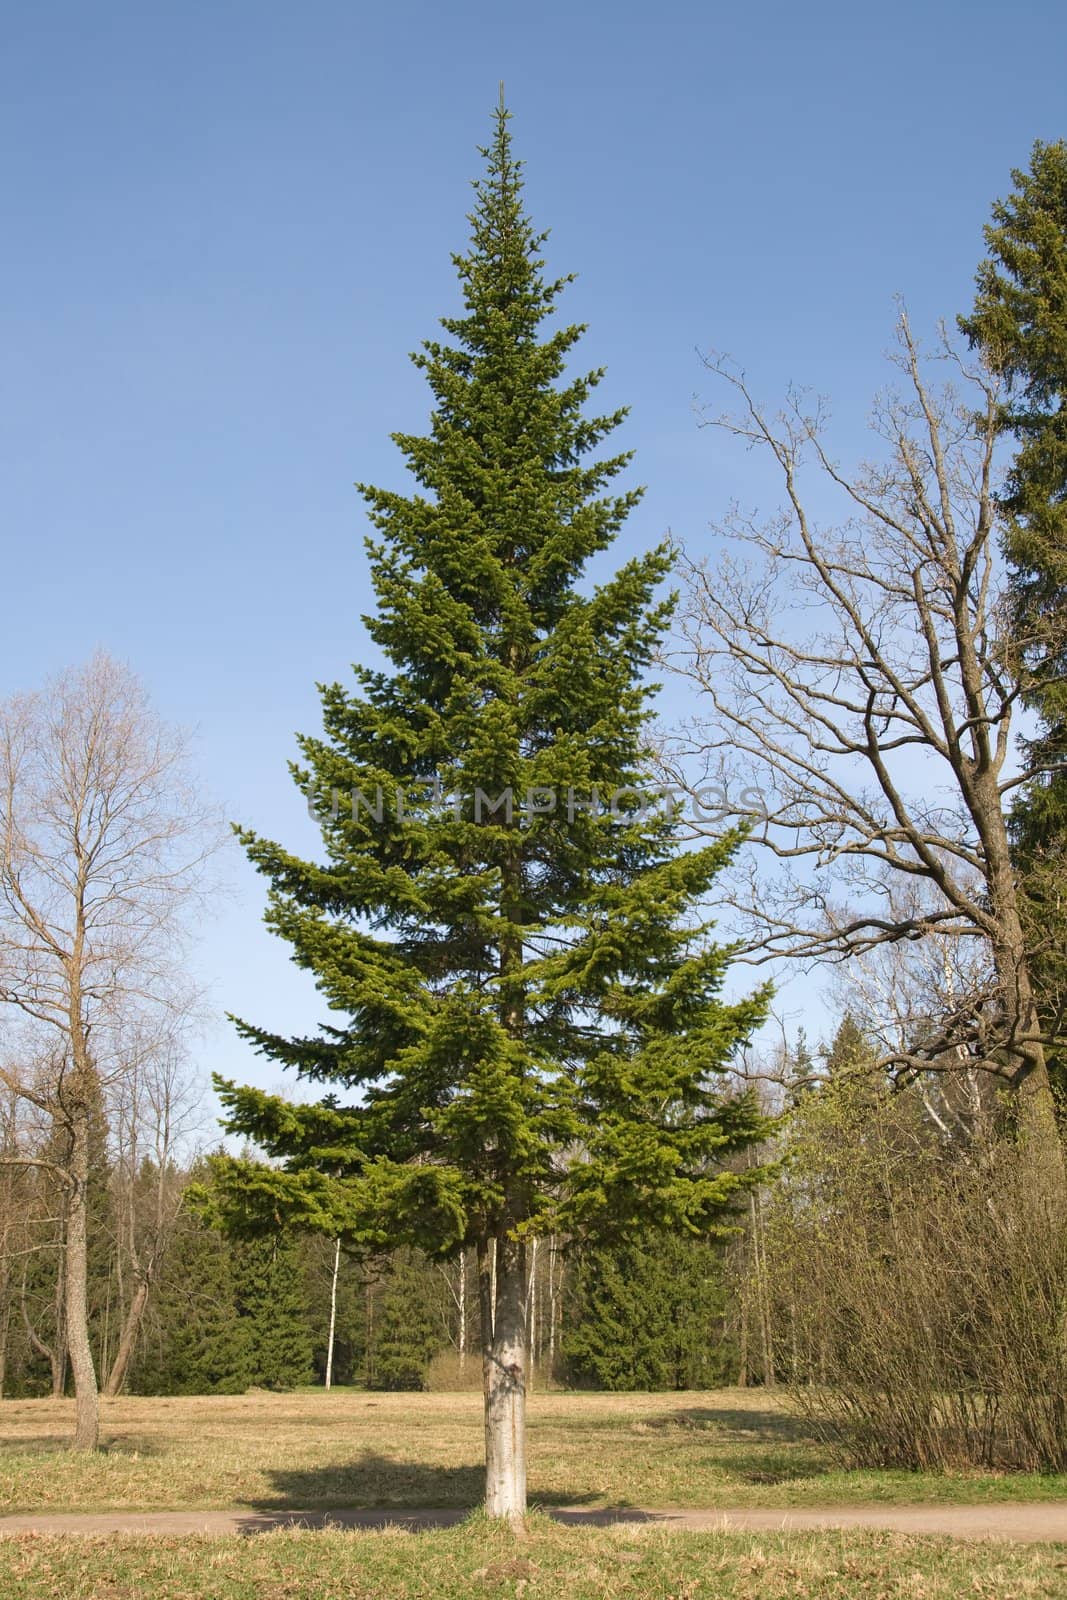 A tall fir tree in a summer park